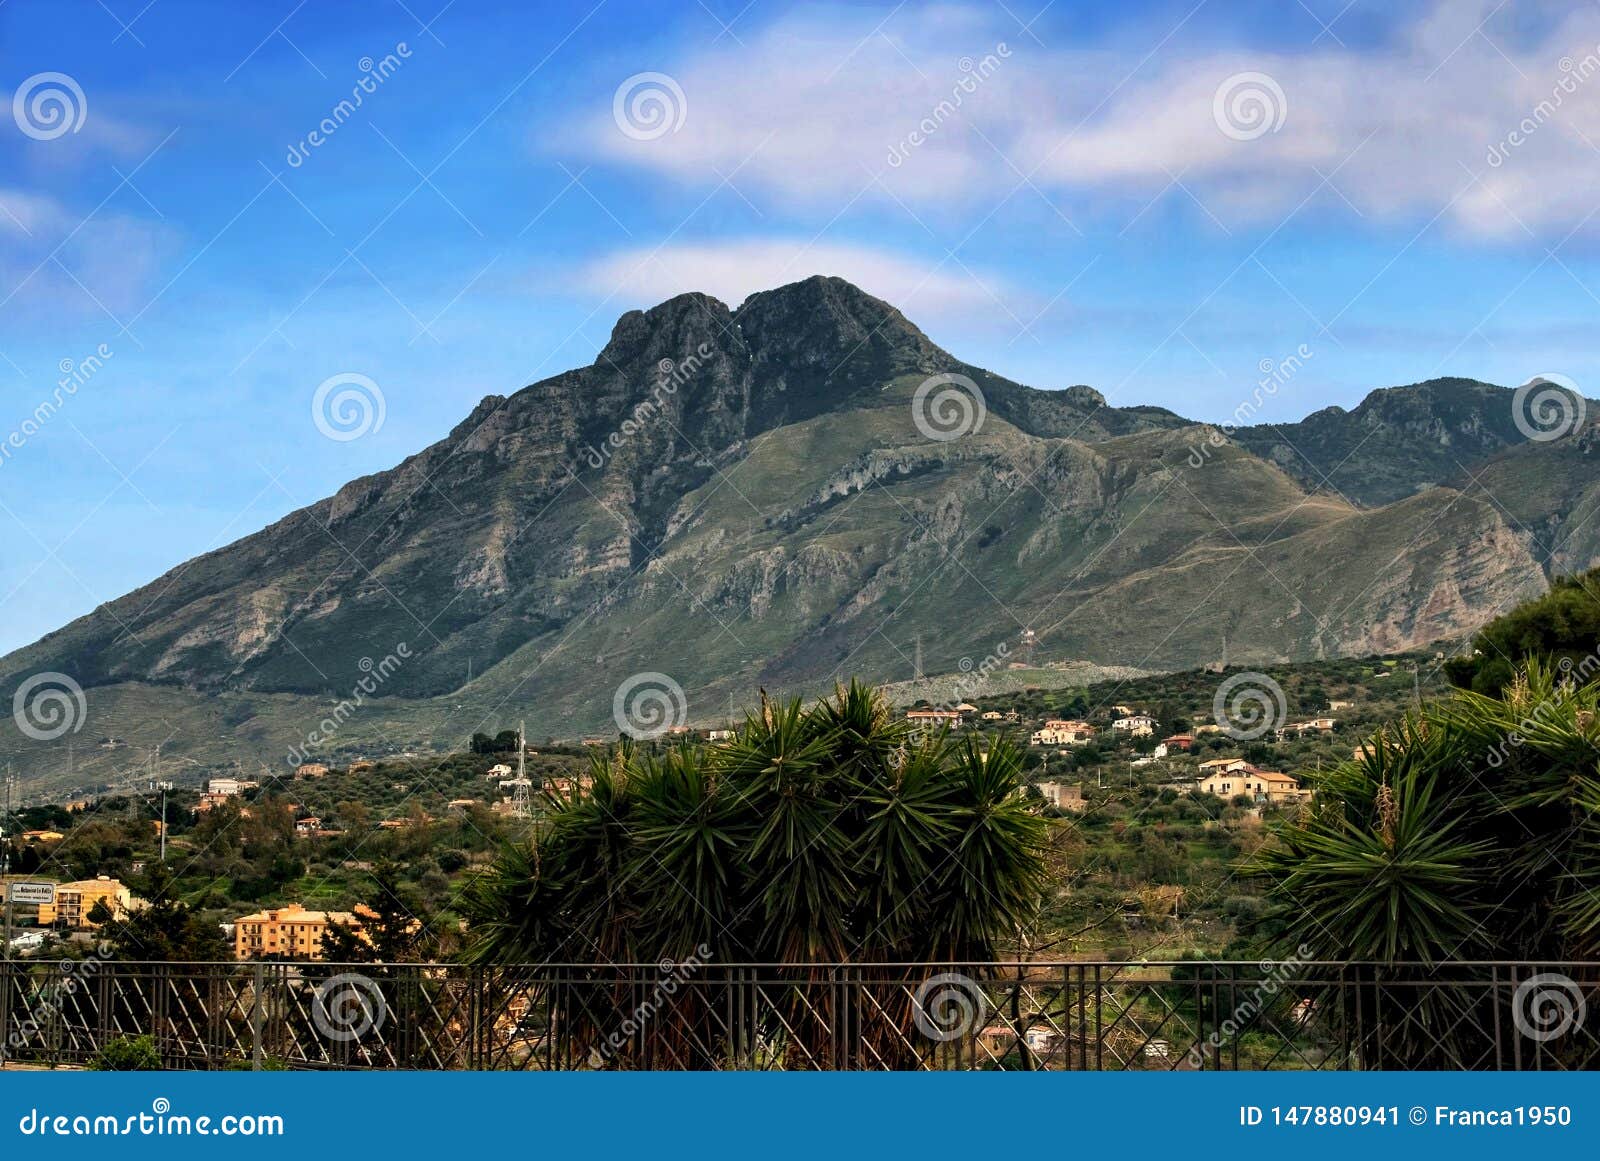 a single mountain san calogero